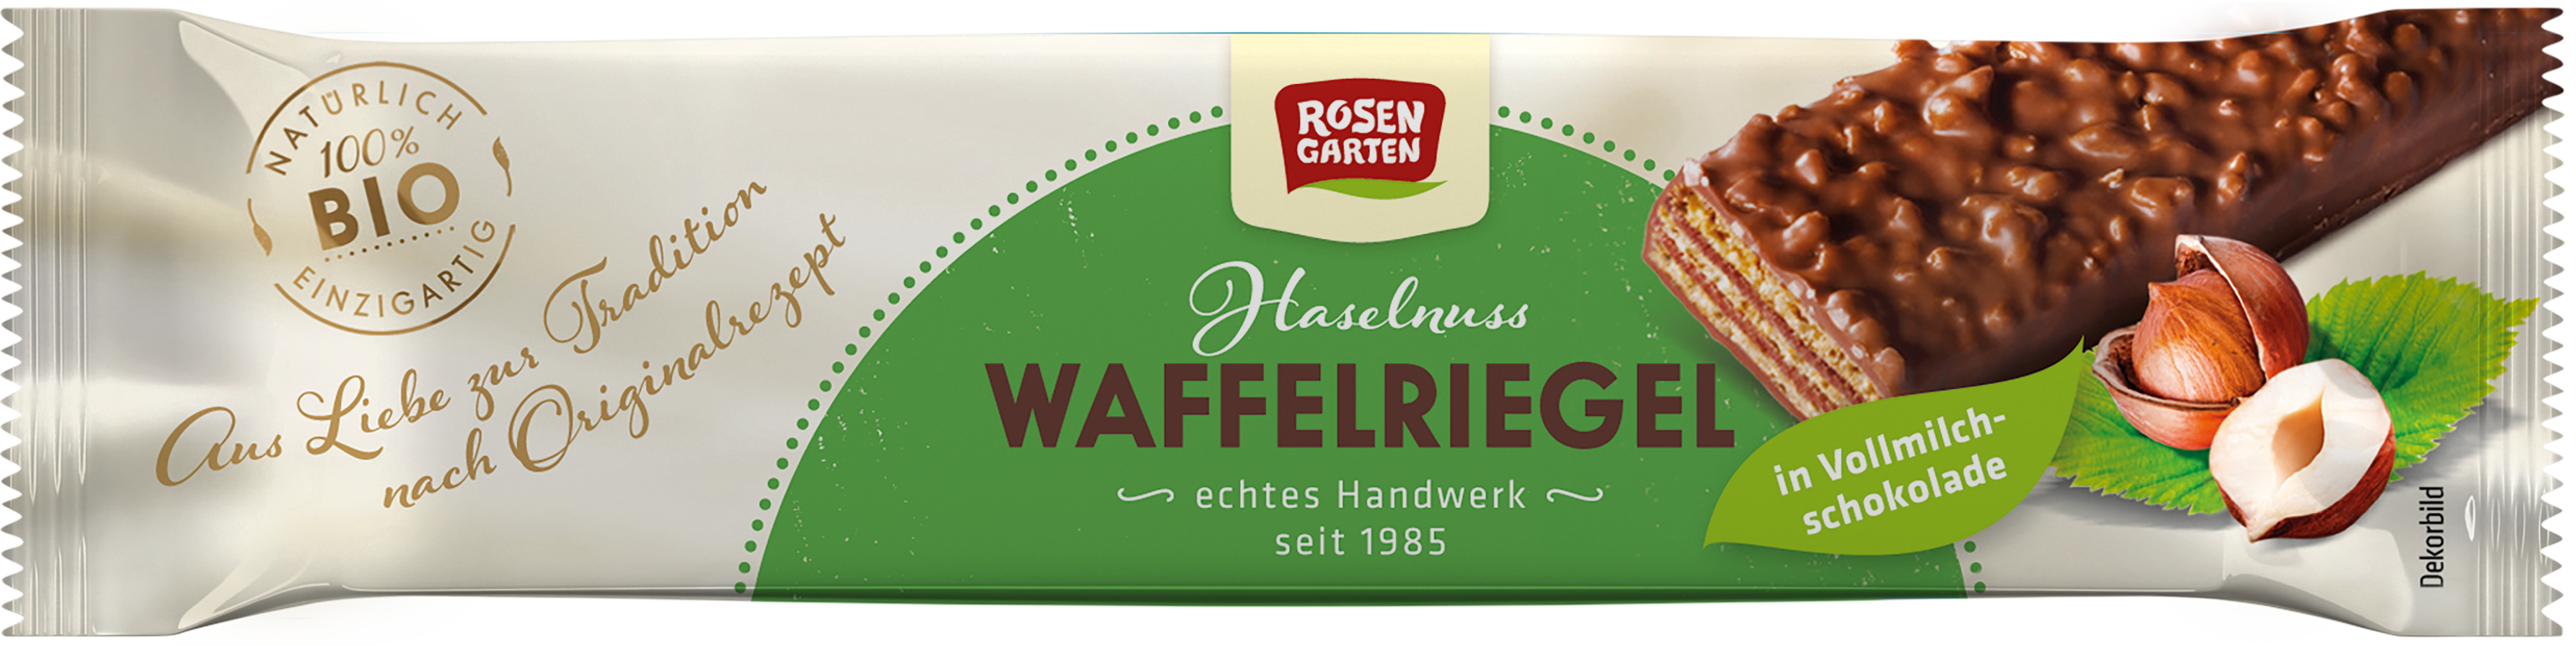 Rosengarten Haselnuss-Waffelriegel 35g